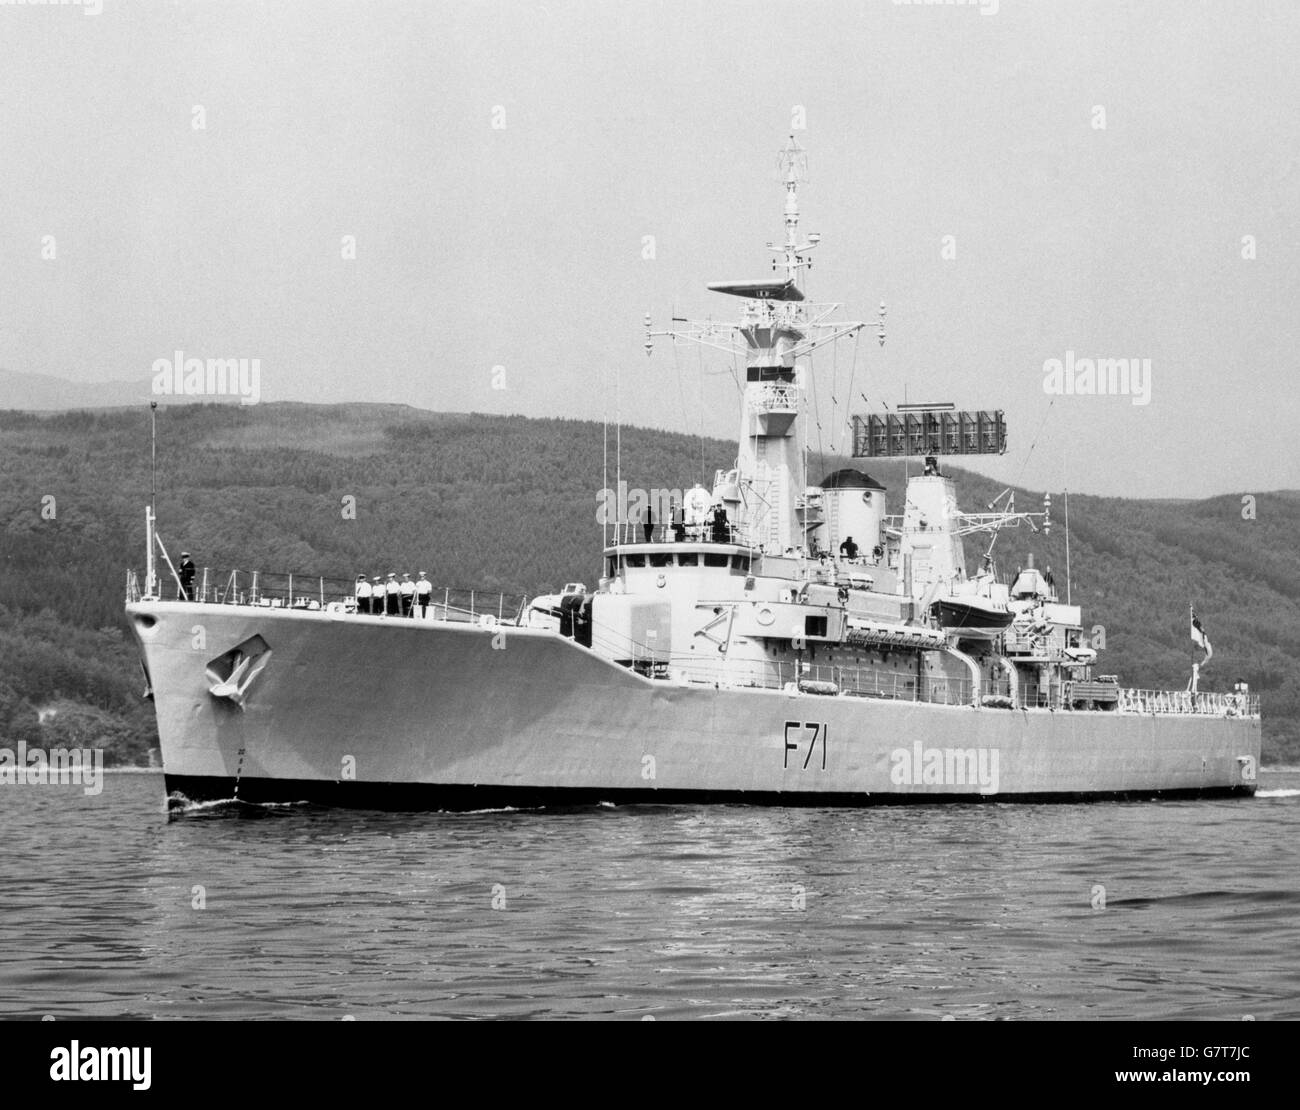 HMS Scylla (F71), fregata di classe Leander della Royal Navy. Fu costruita nel Devonport Royal Dockyard. Lanciato nel 1968 e commissionato nel 1970. Foto Stock